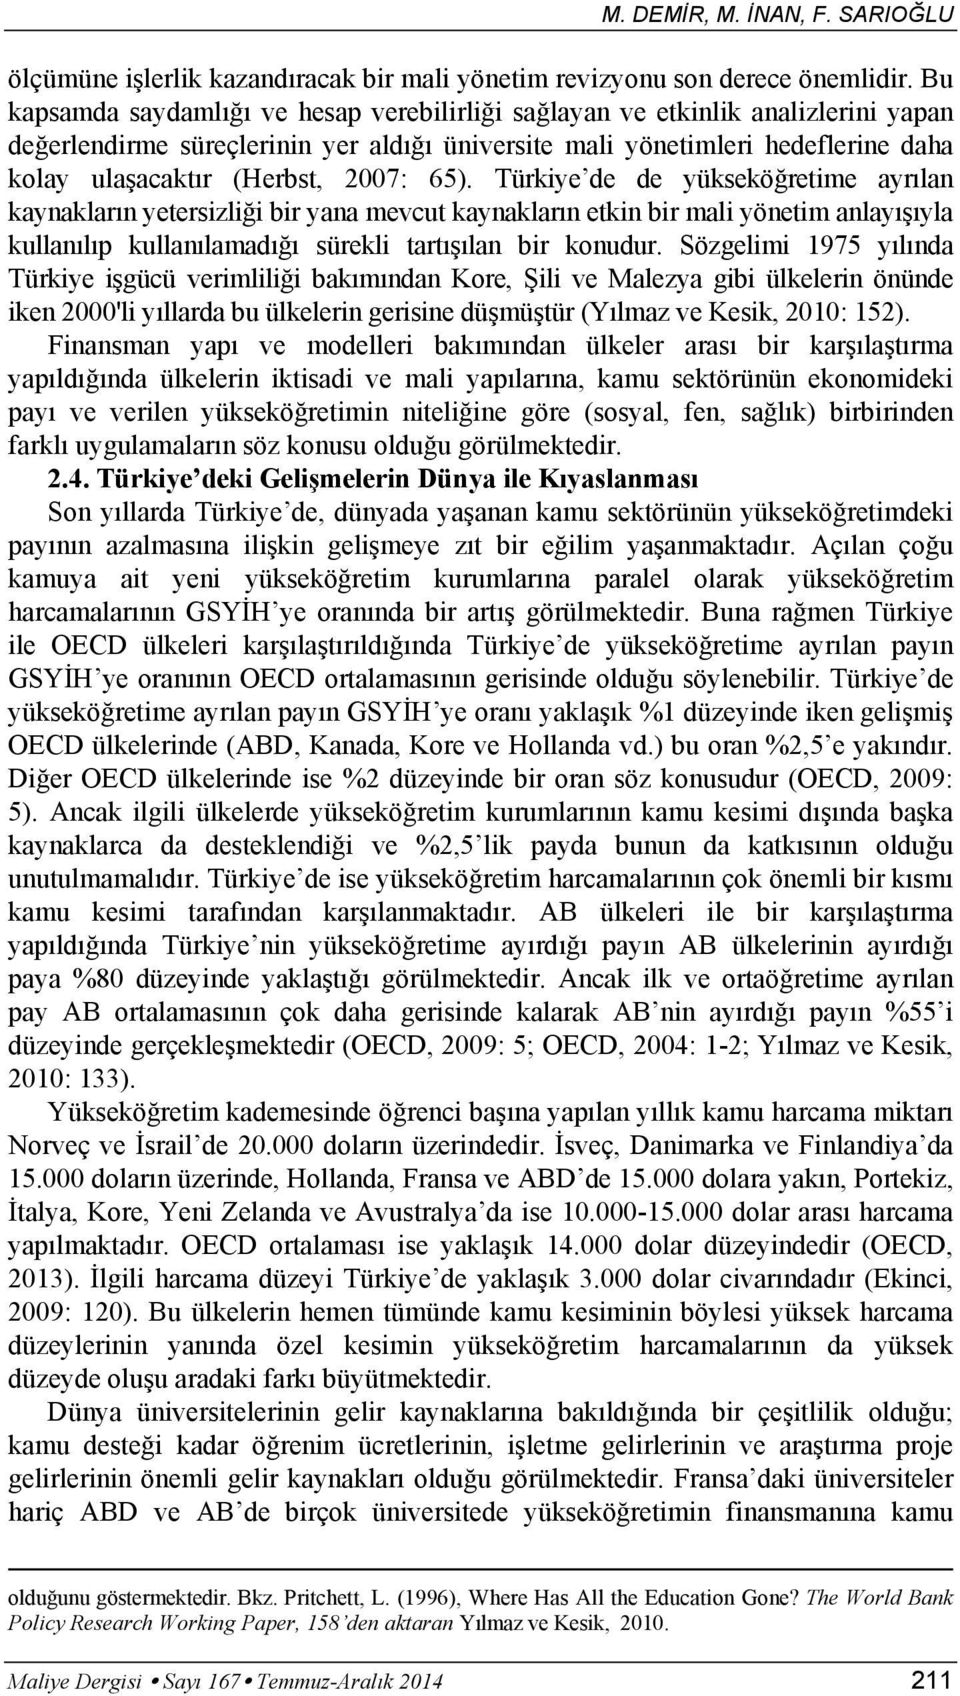 Türkiye de de yüksekö retime ayr lan kaynaklar n yetersizli i bir yana mevcut kaynaklar n etkin bir mali yönetim anlay yla kullan l p kullan lamad sürekli tart lan bir konudur.